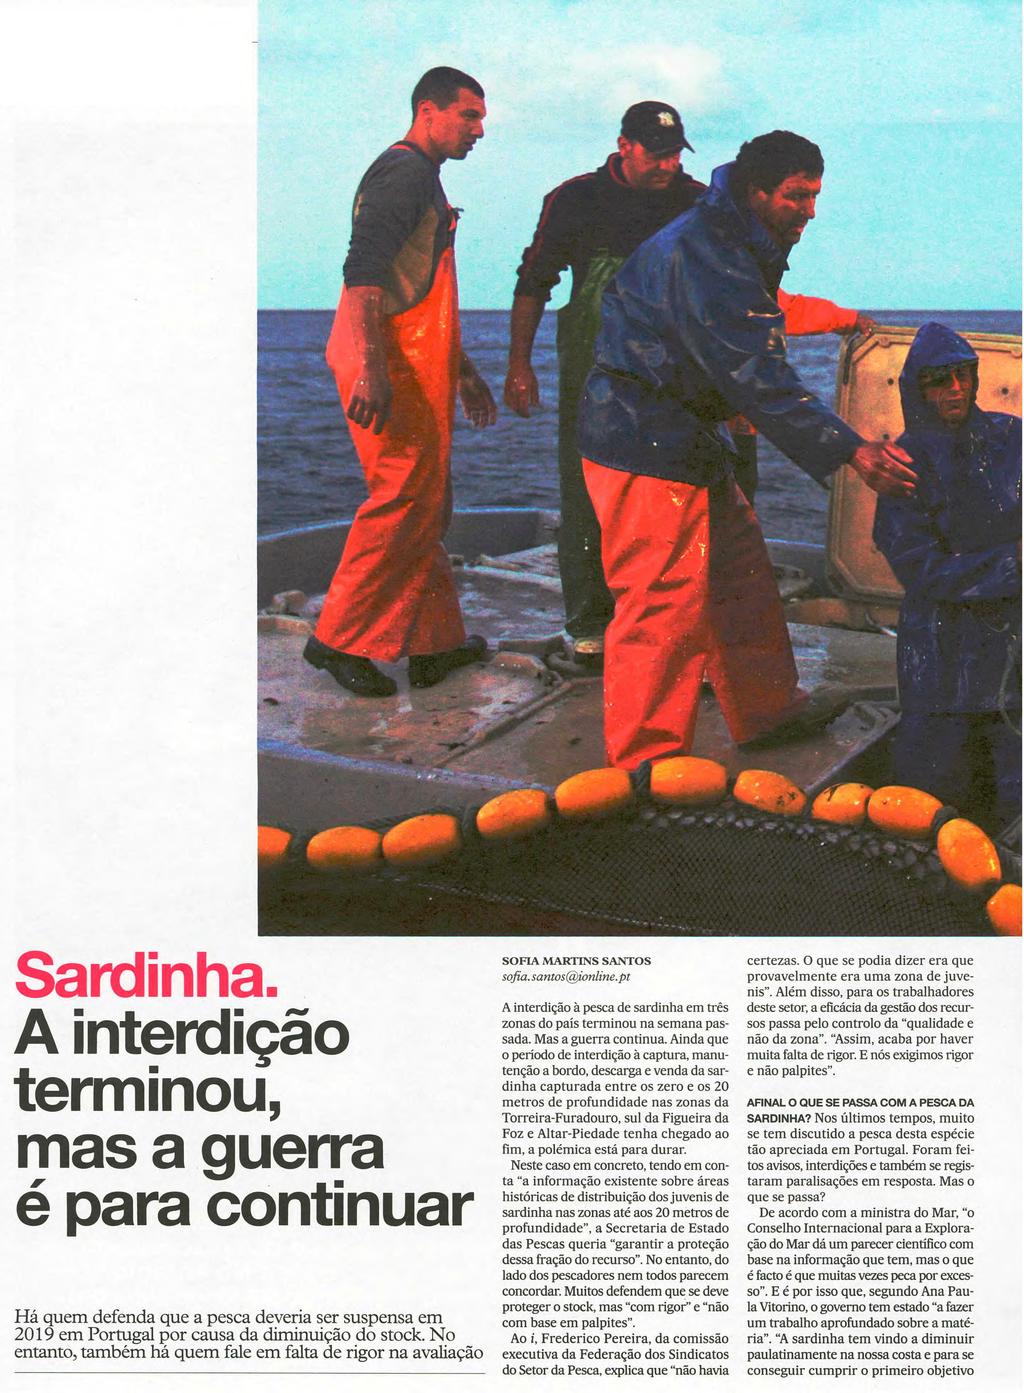 Sardinha. A interdição terminou, mas a guerra é para continuar Há quem defenda que a pesca deveria ser suspensa em 2019 em Portugal por causa da diminuição do stock.